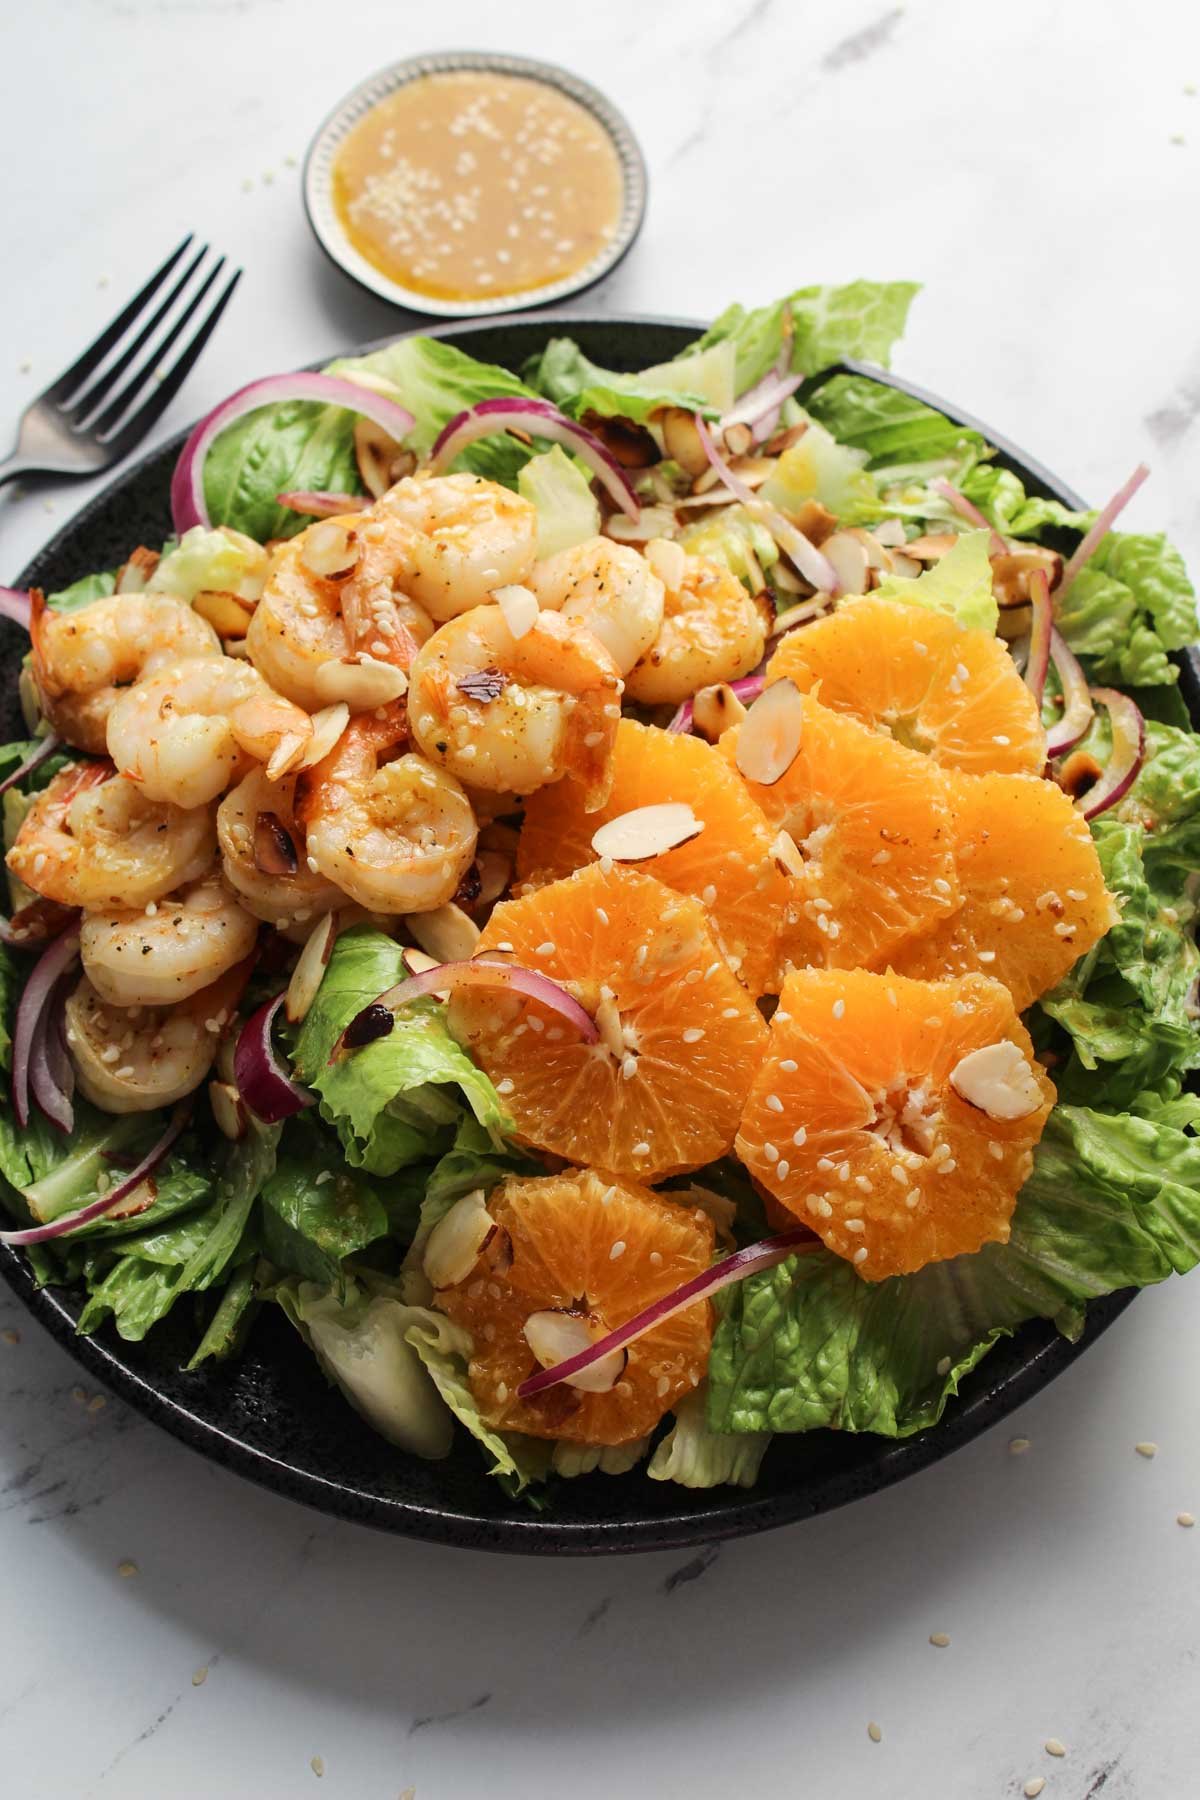 Shrimp salad on a plate with sliced oranges